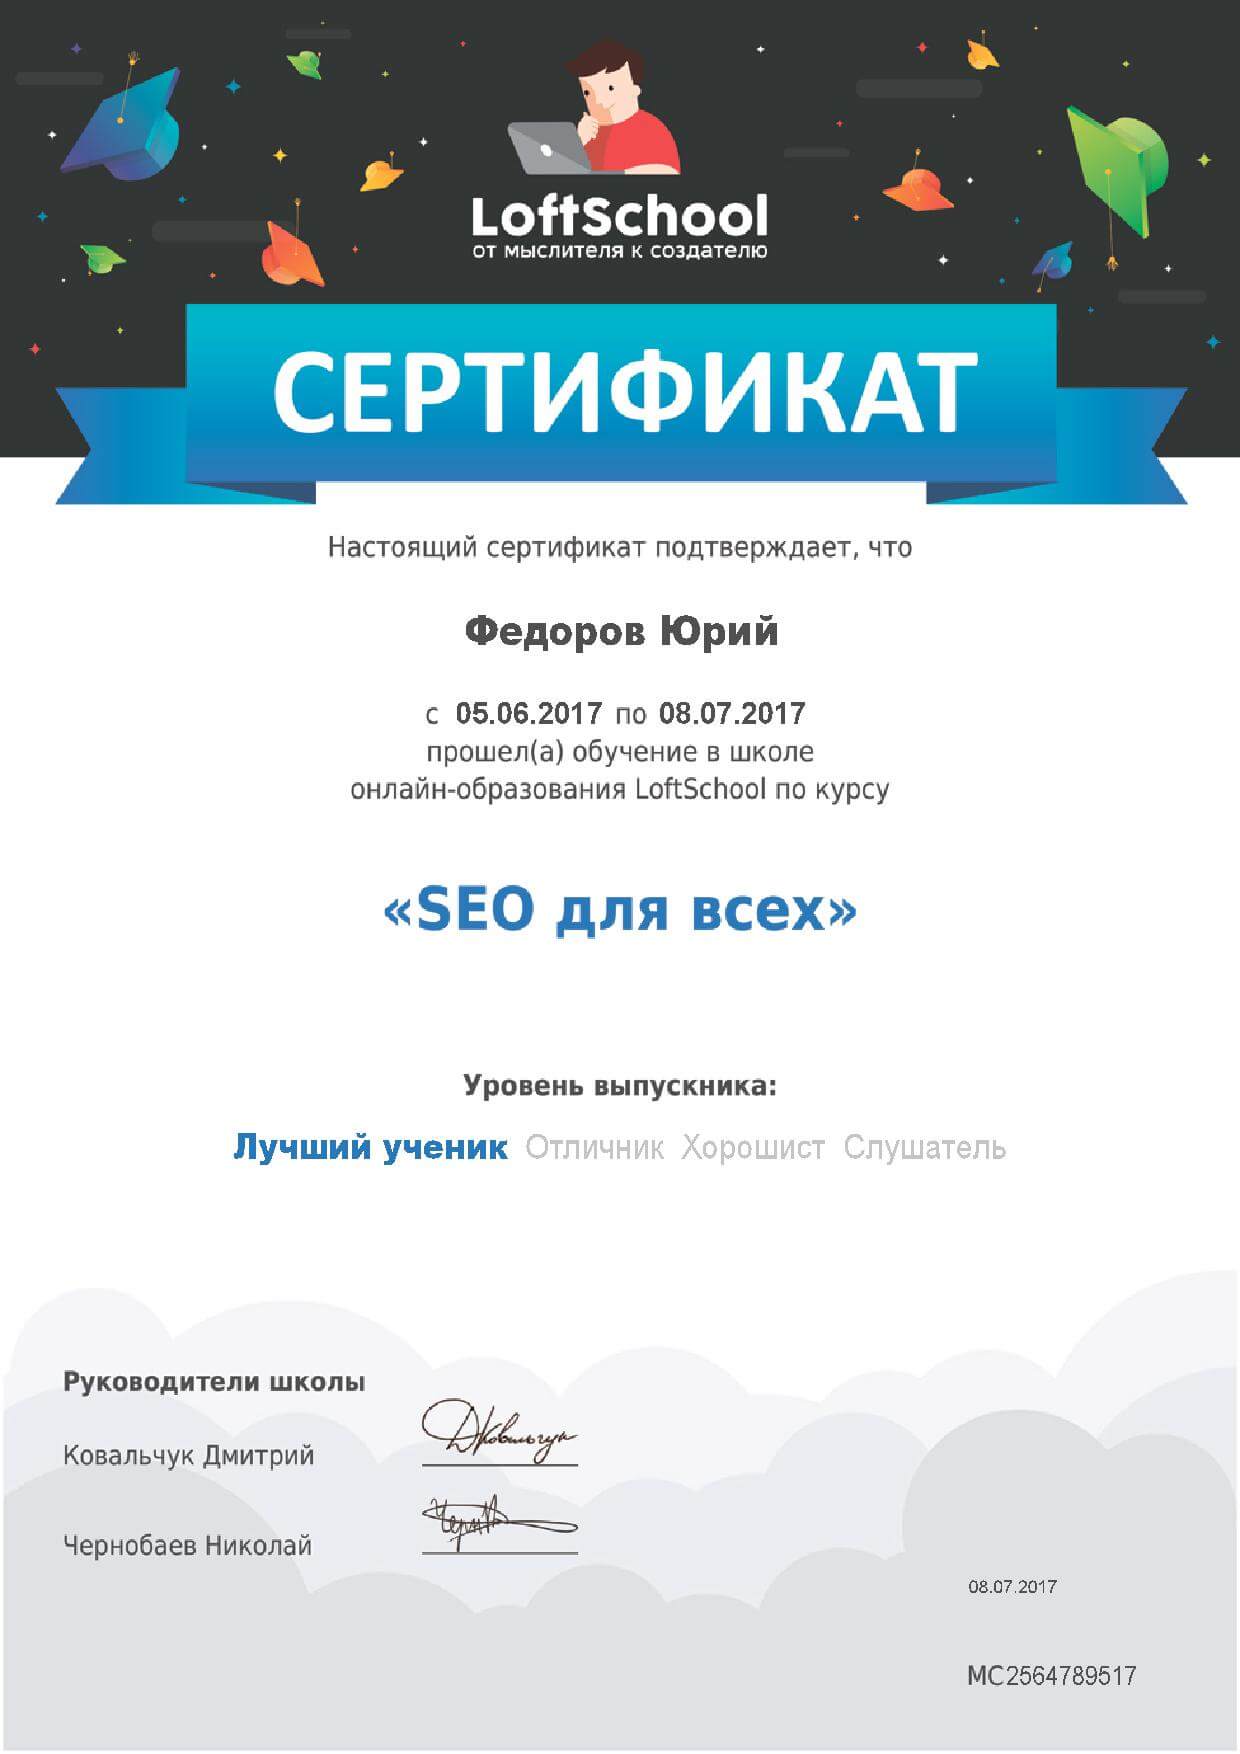 Сертификат “SEO для всех”